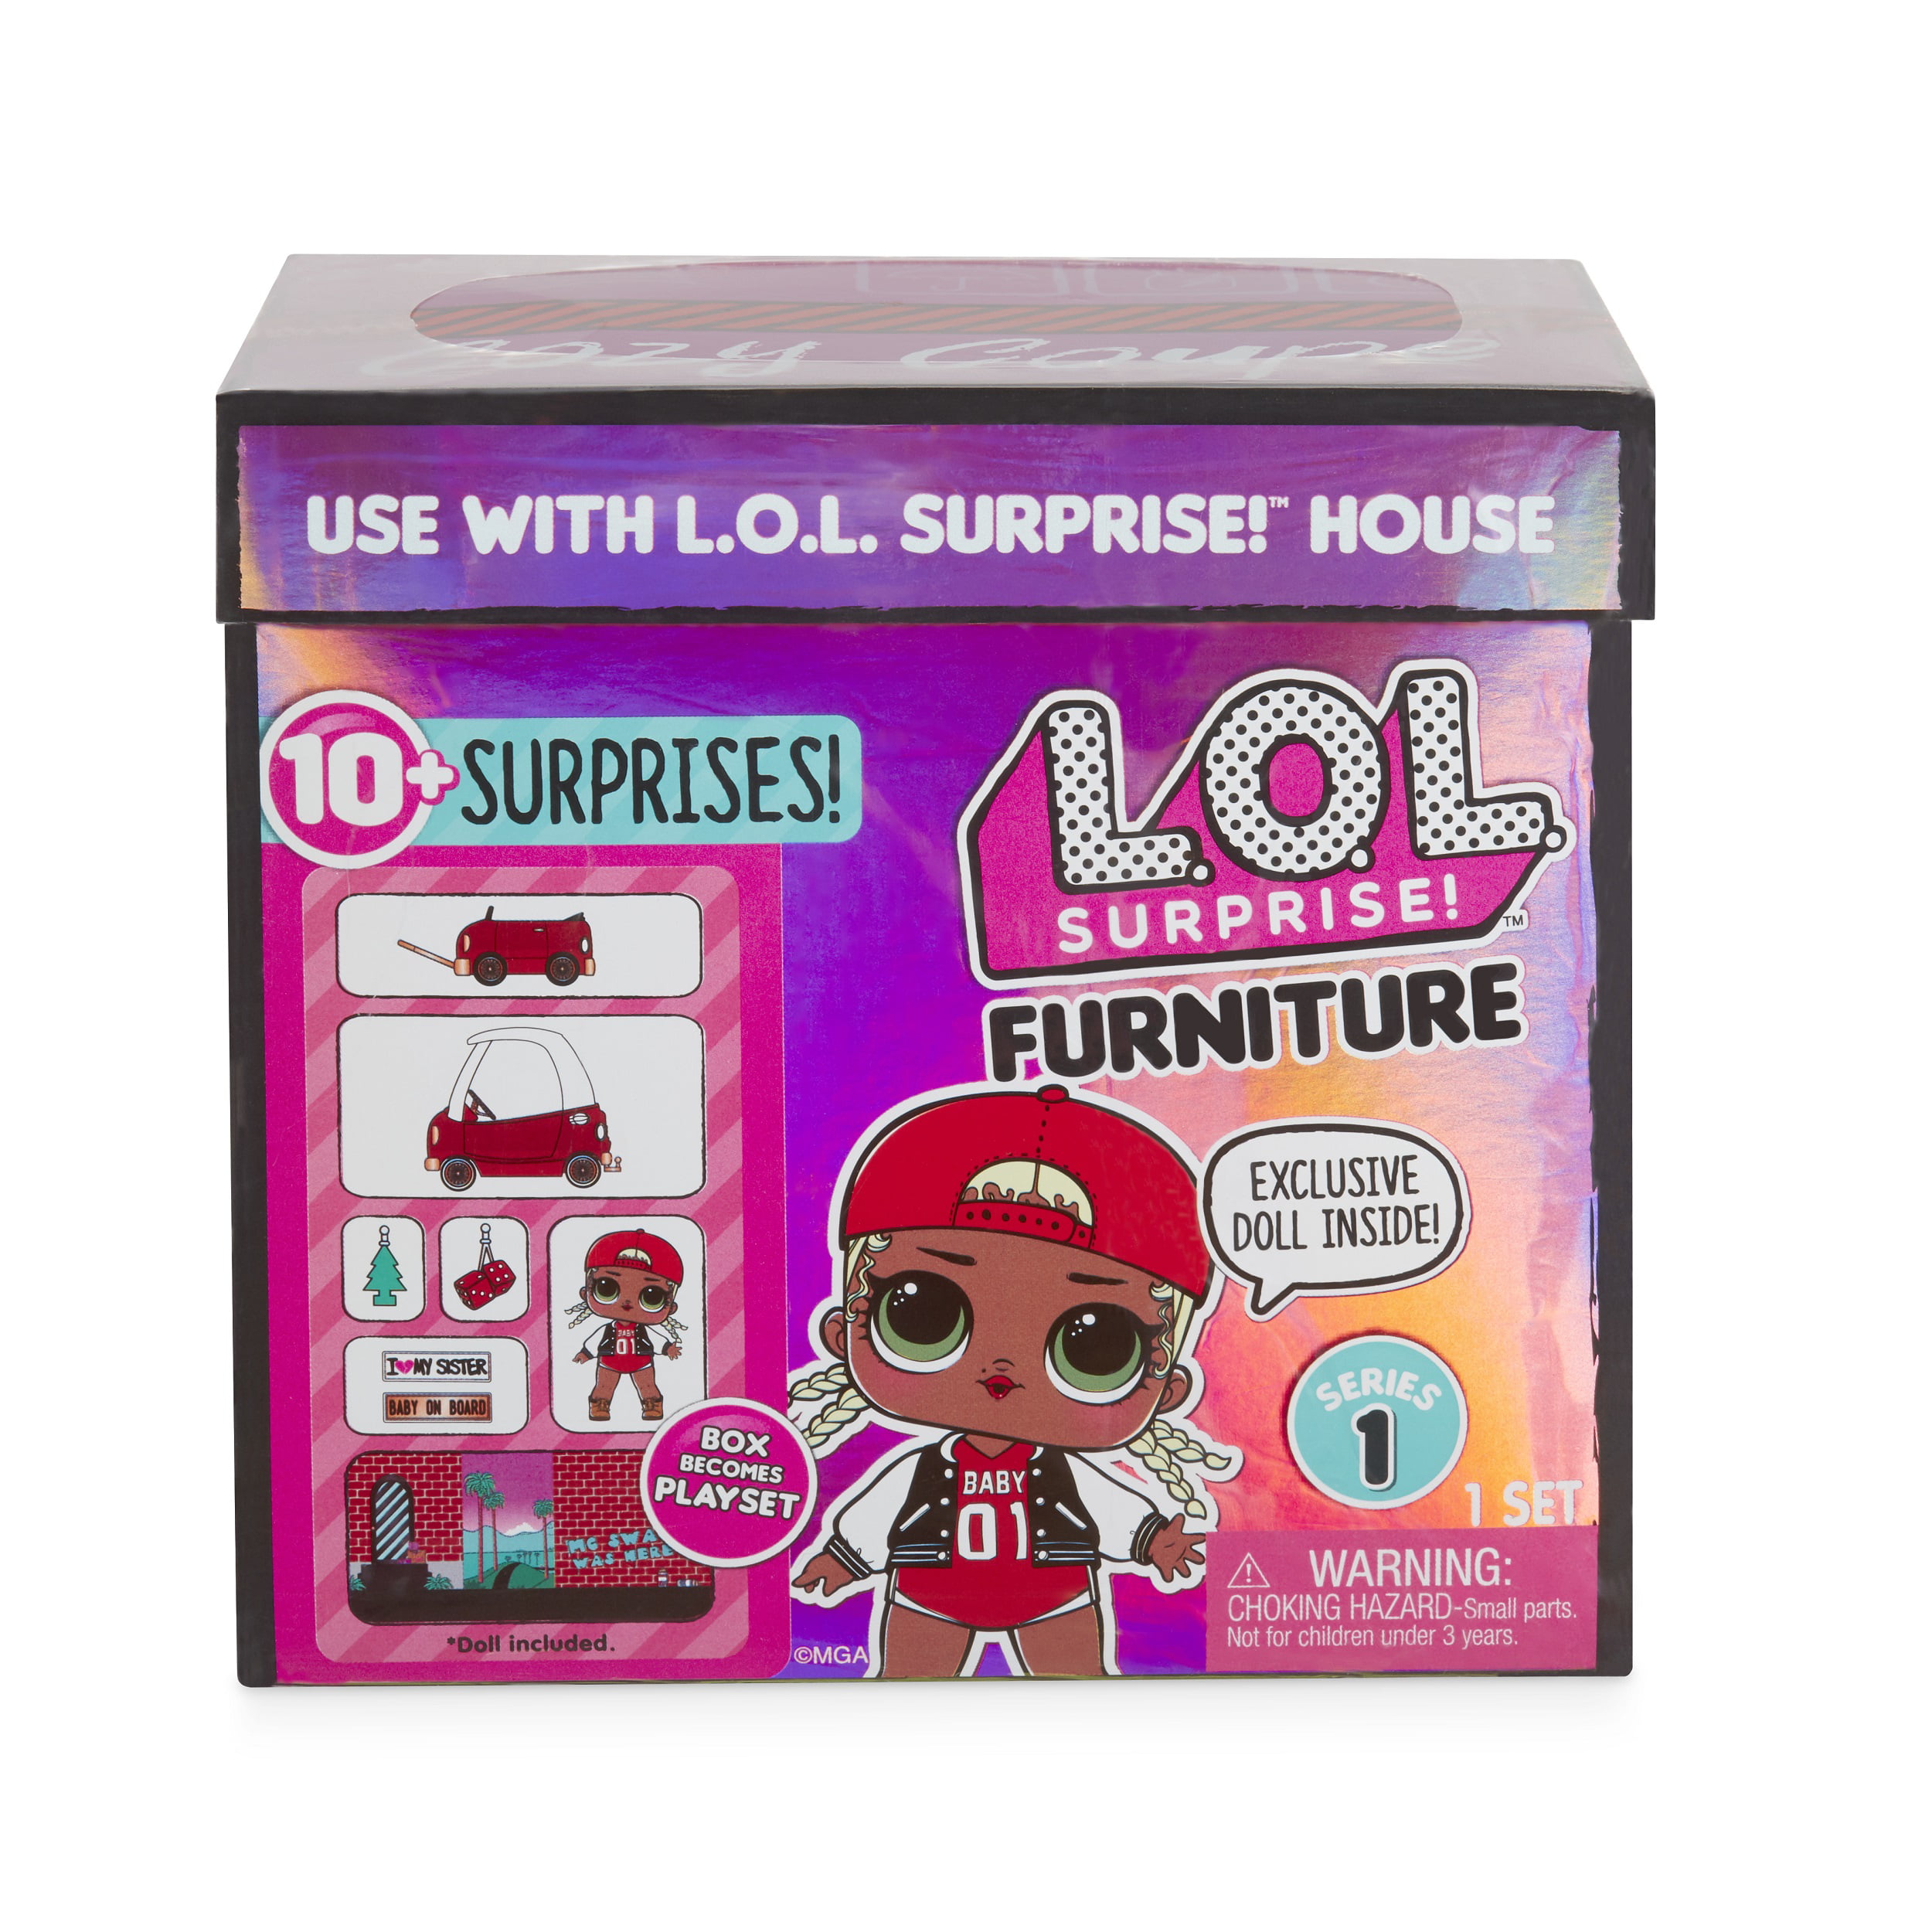 lol doll furniture set